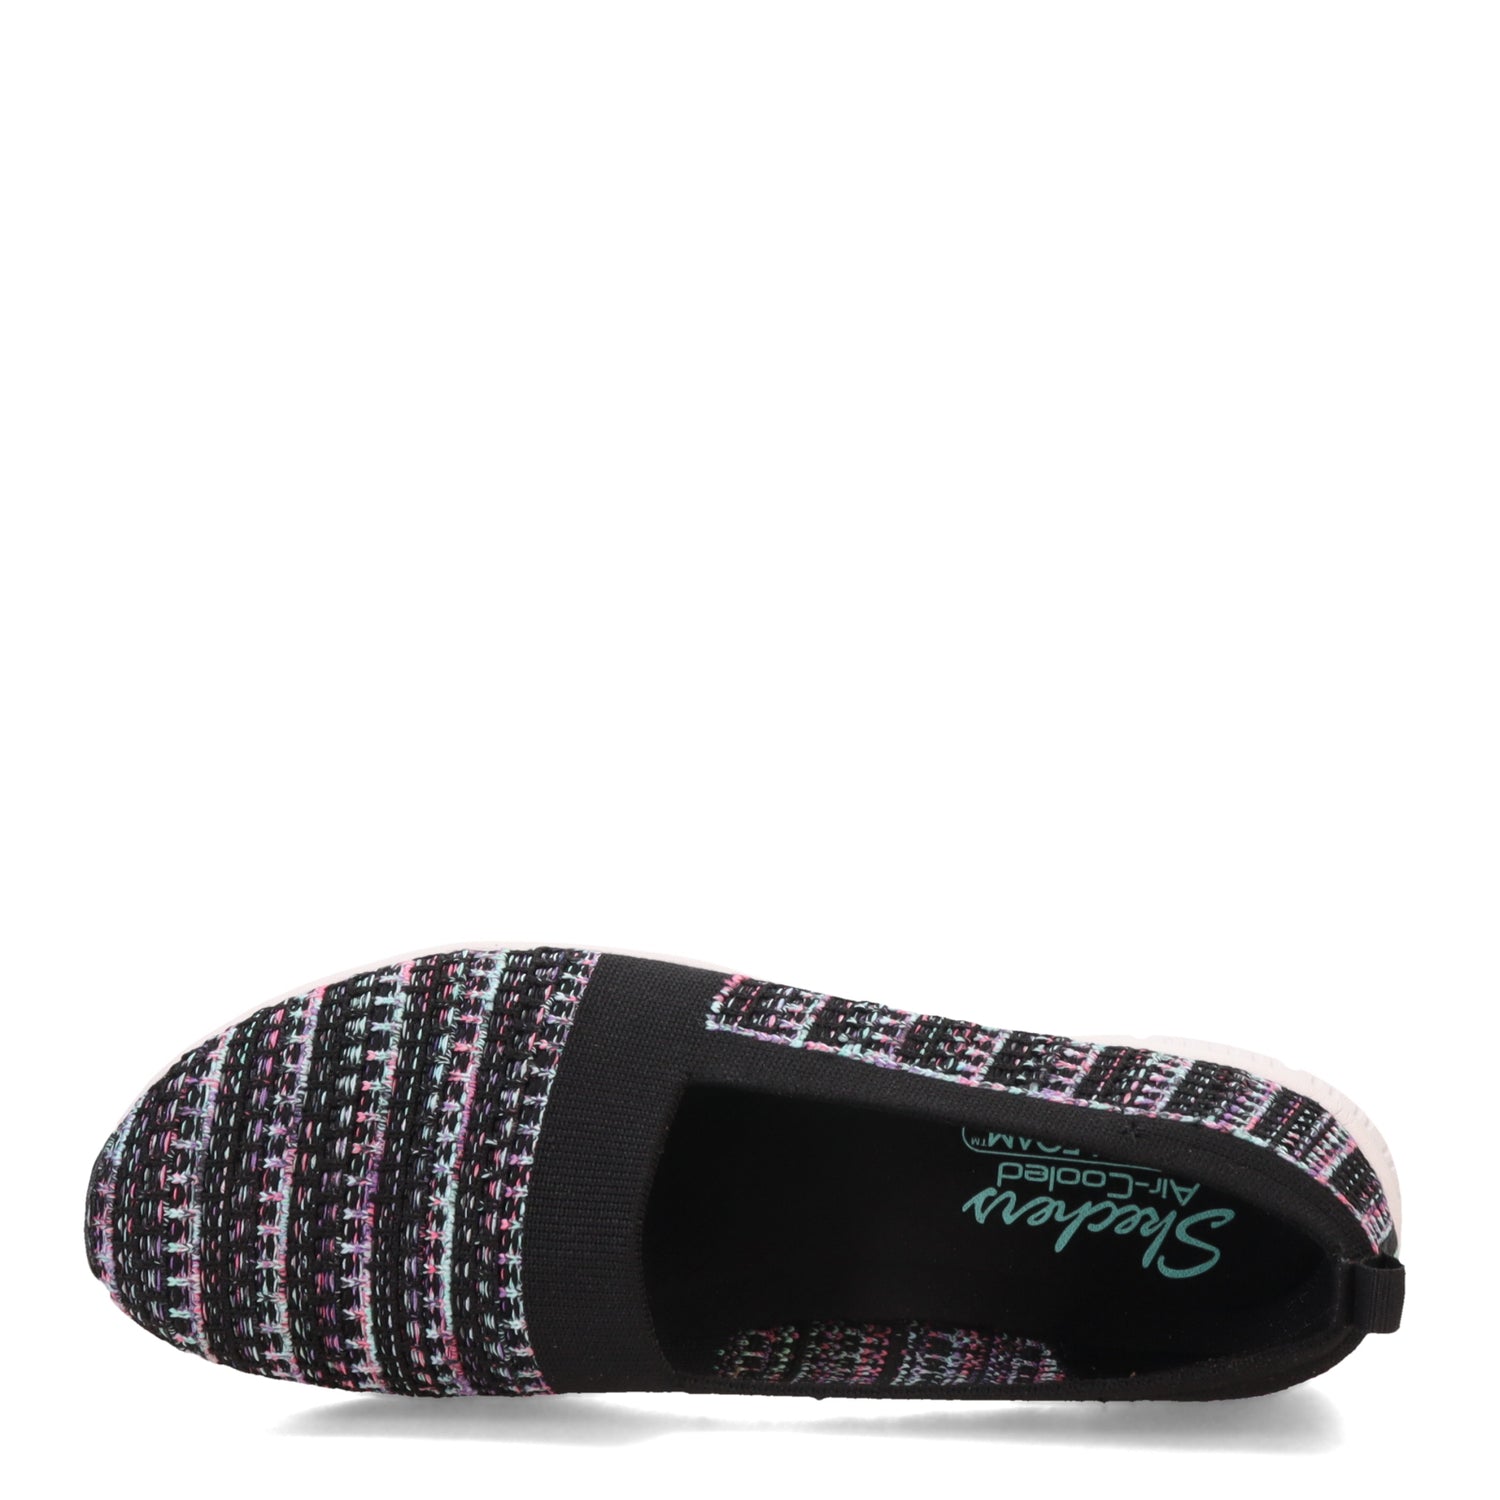 Peltz Shoes  Women's Skechers Be-Cool - Sherbet Skies Slip-On Black Multi 100367-BKMT